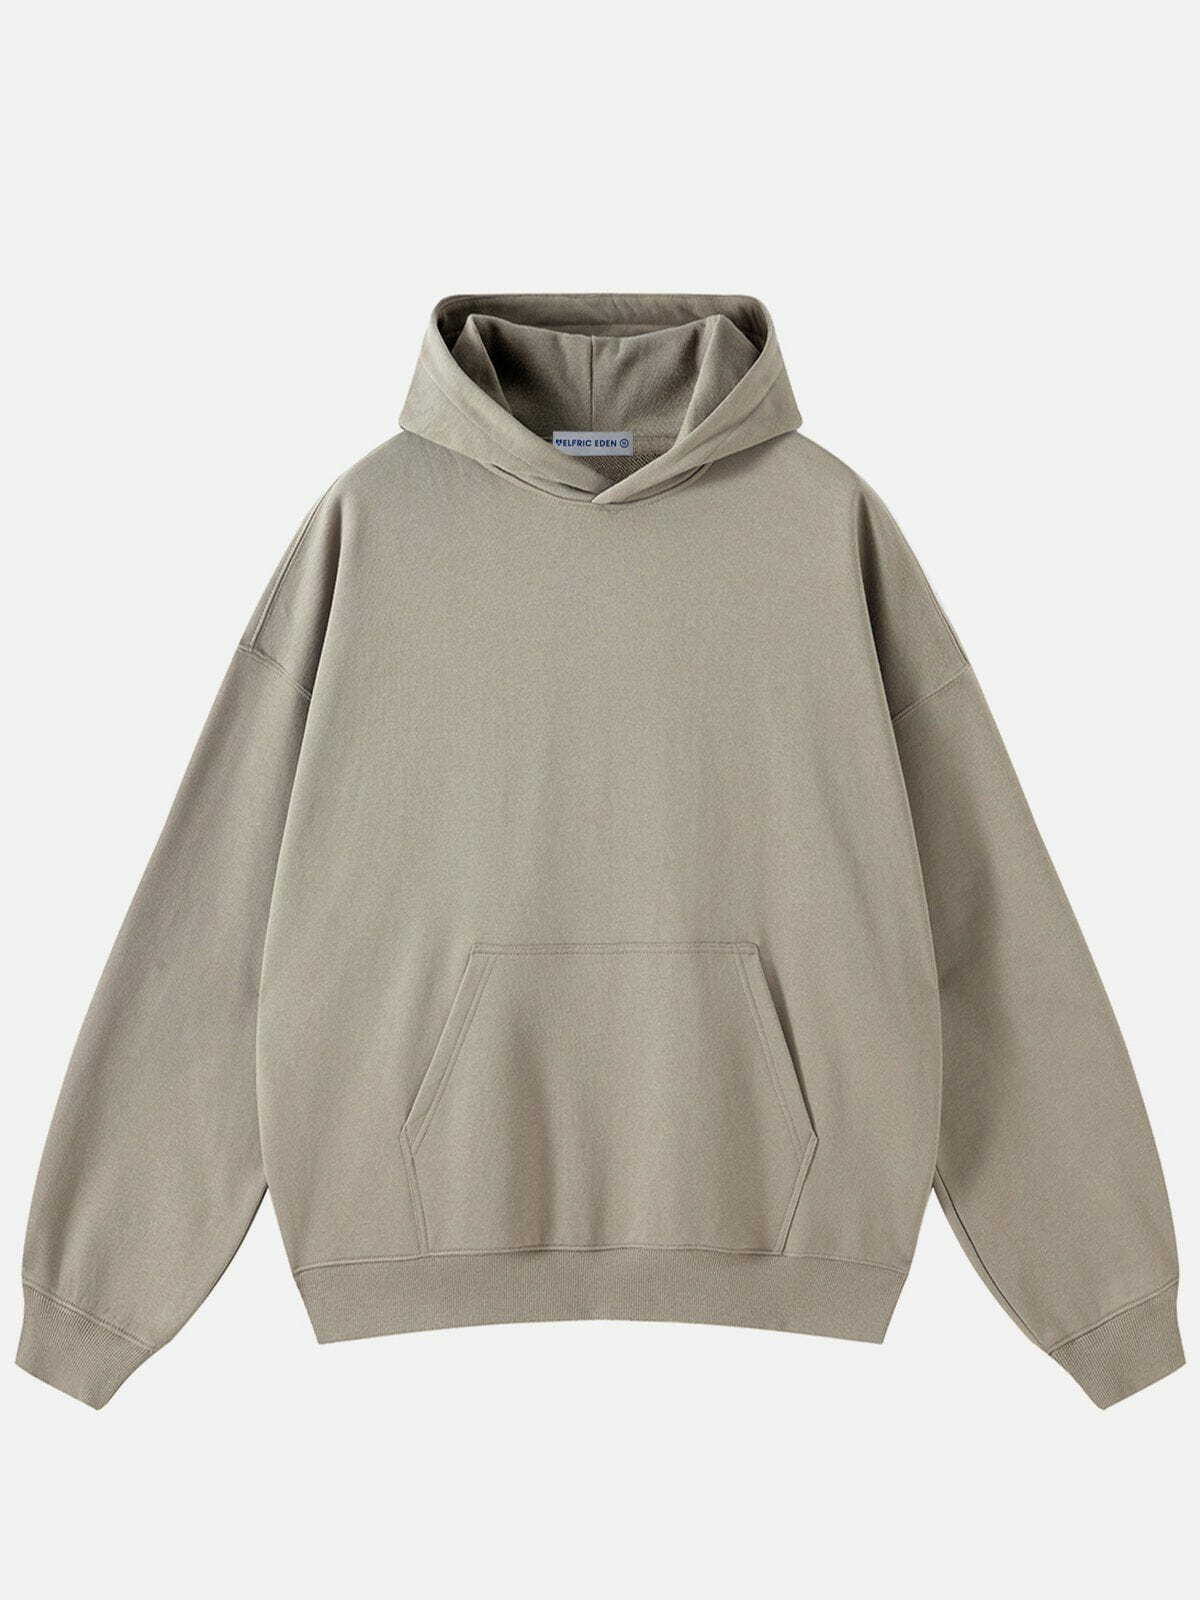 solid cotton hoodie urban streetwear essential 7950